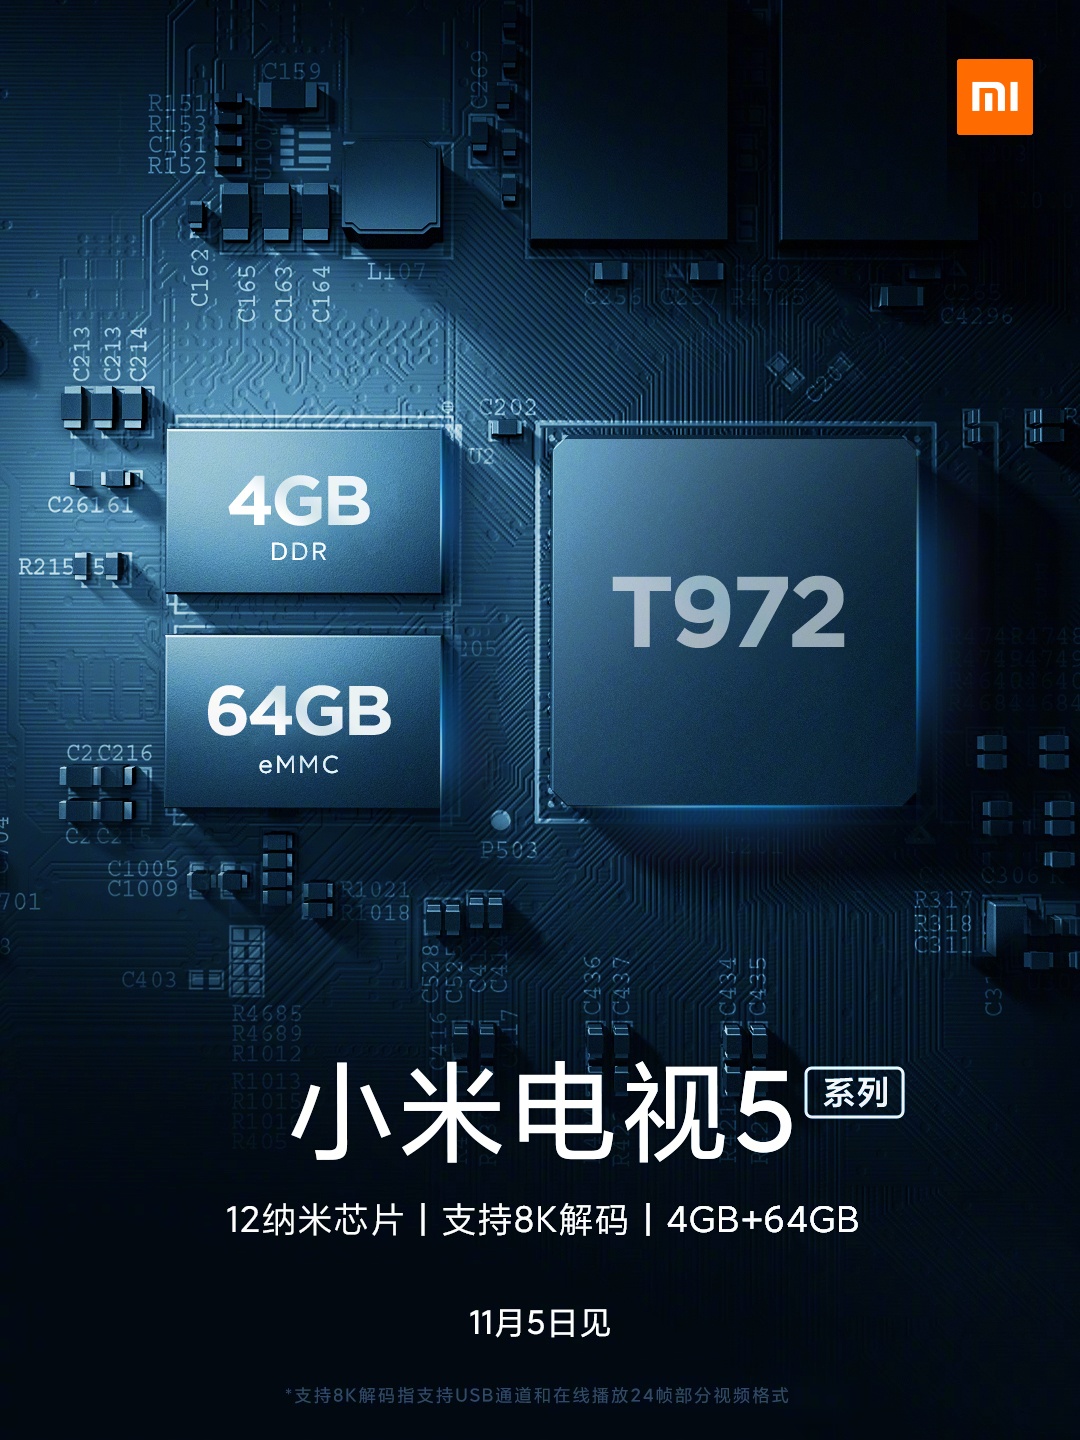 [Update: More Details] Inilah tampilan resmi pertama Mi TV 5 mendatang dari Xiaomi 1